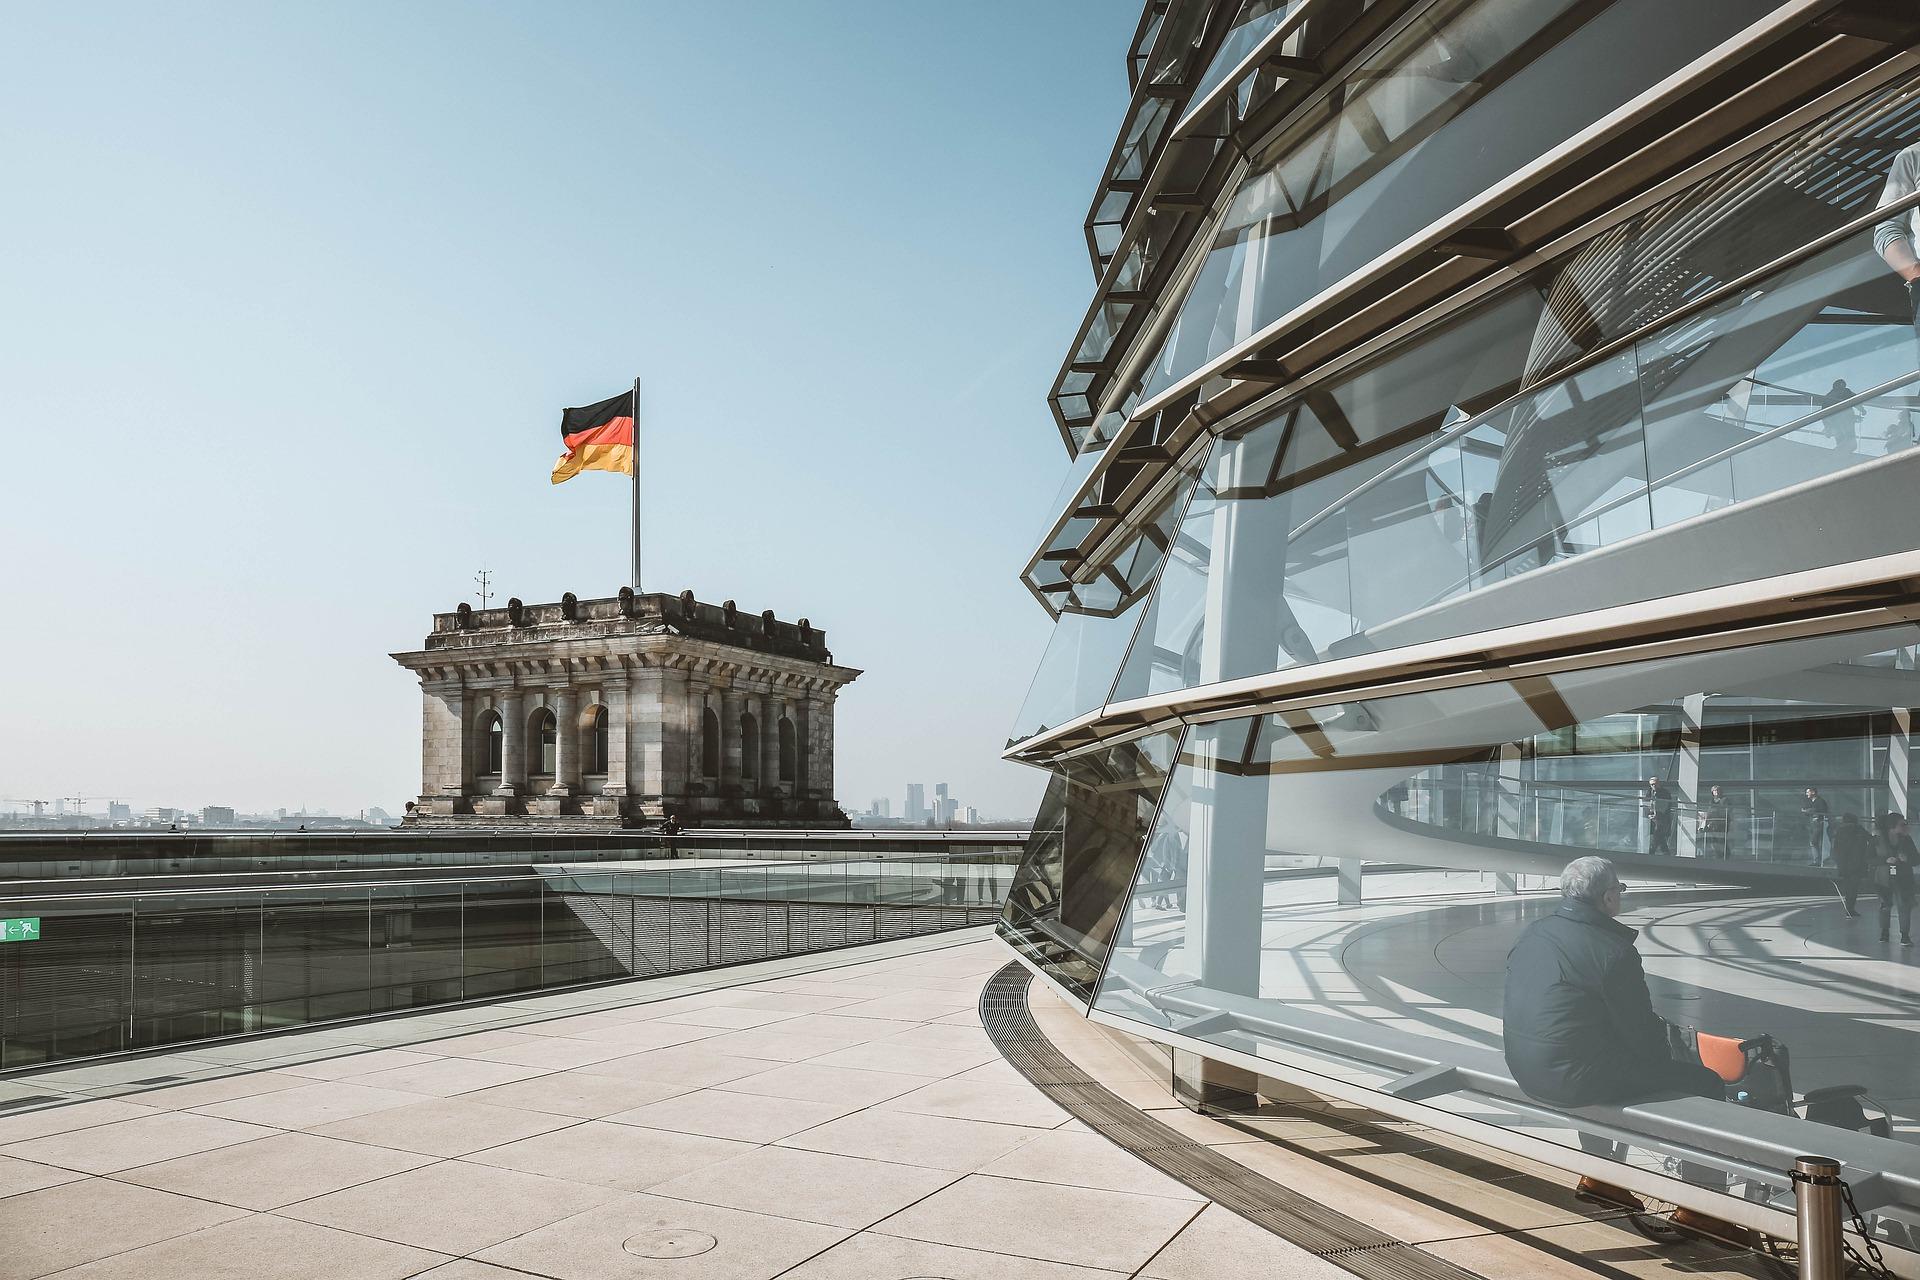 Uczniowie wybierający studia w Niemczech często korzystają z okazji odwiedzenia stolicy kraju, Berlina